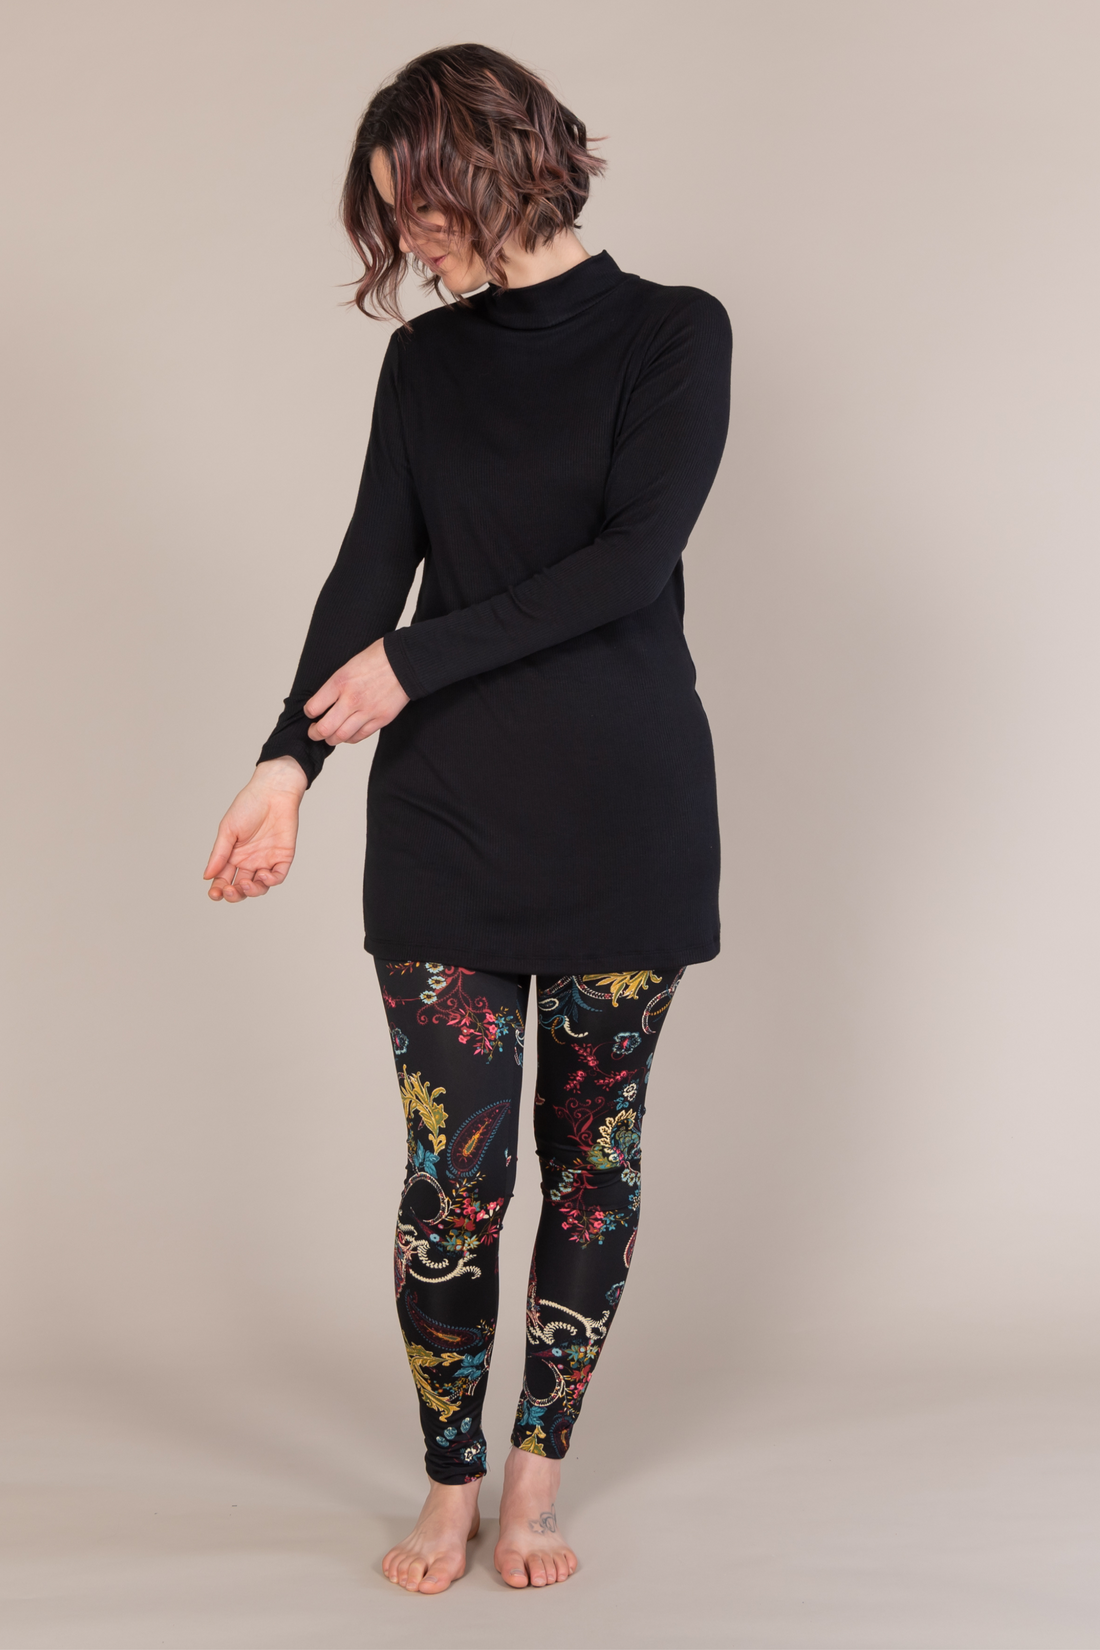 Legging taille haute confortable noir avec motifs colorés artistiques fabriqué au Québec.